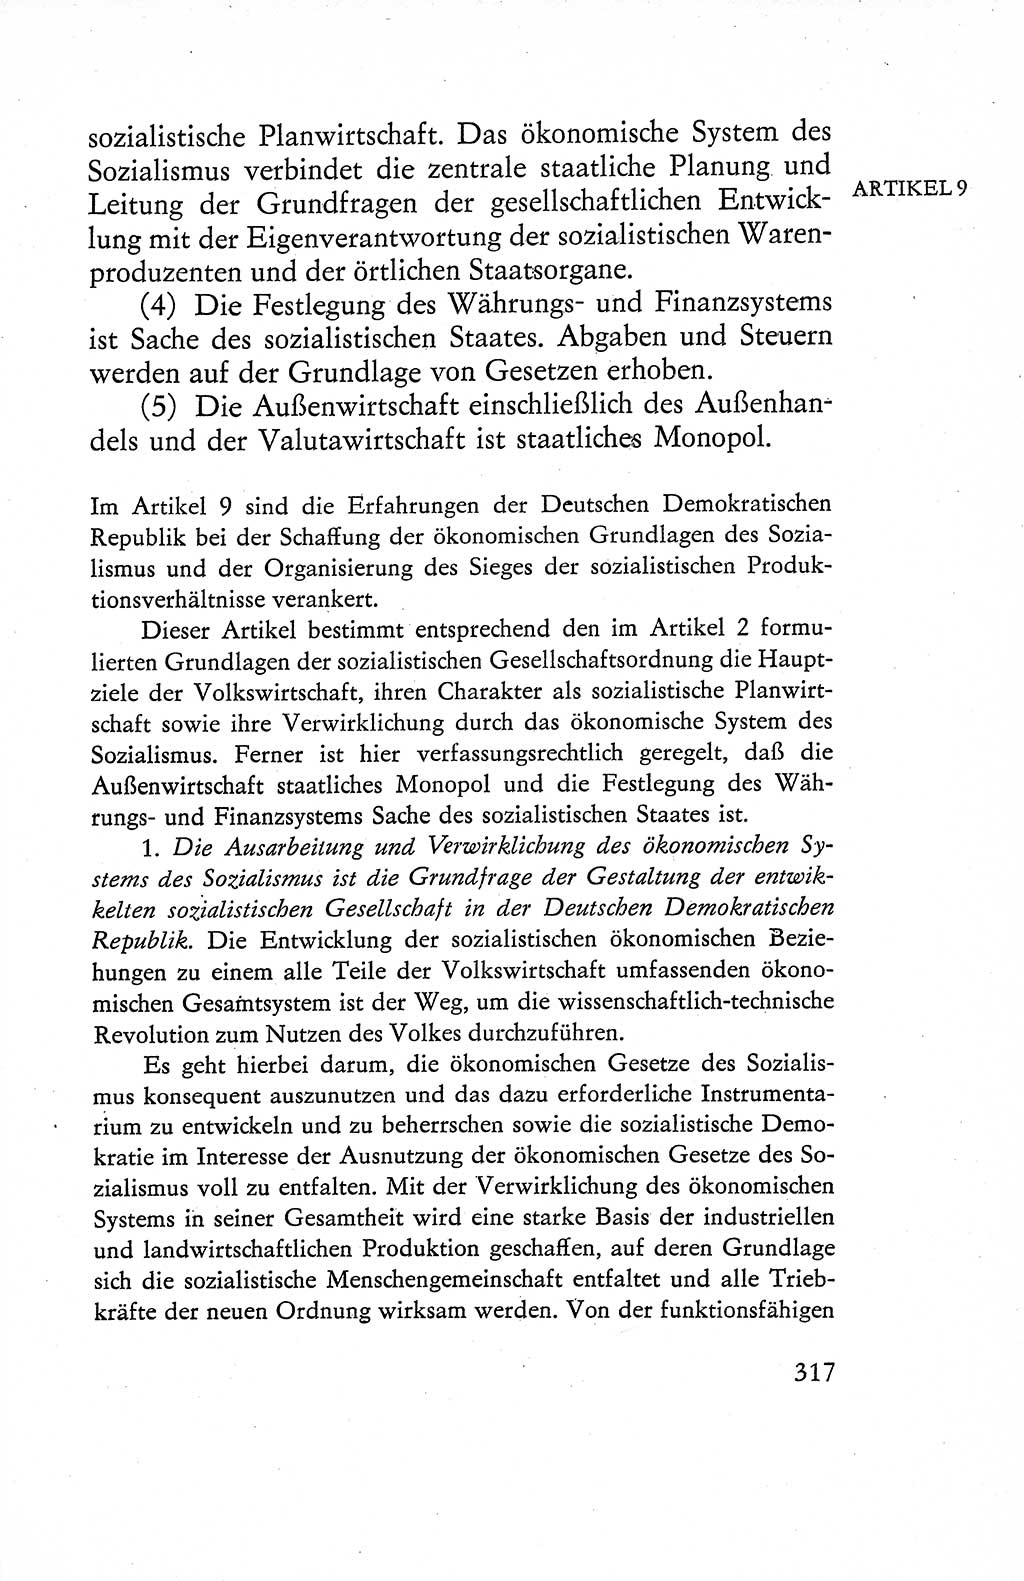 Verfassung der Deutschen Demokratischen Republik (DDR), Dokumente, Kommentar 1969, Band 1, Seite 317 (Verf. DDR Dok. Komm. 1969, Bd. 1, S. 317)